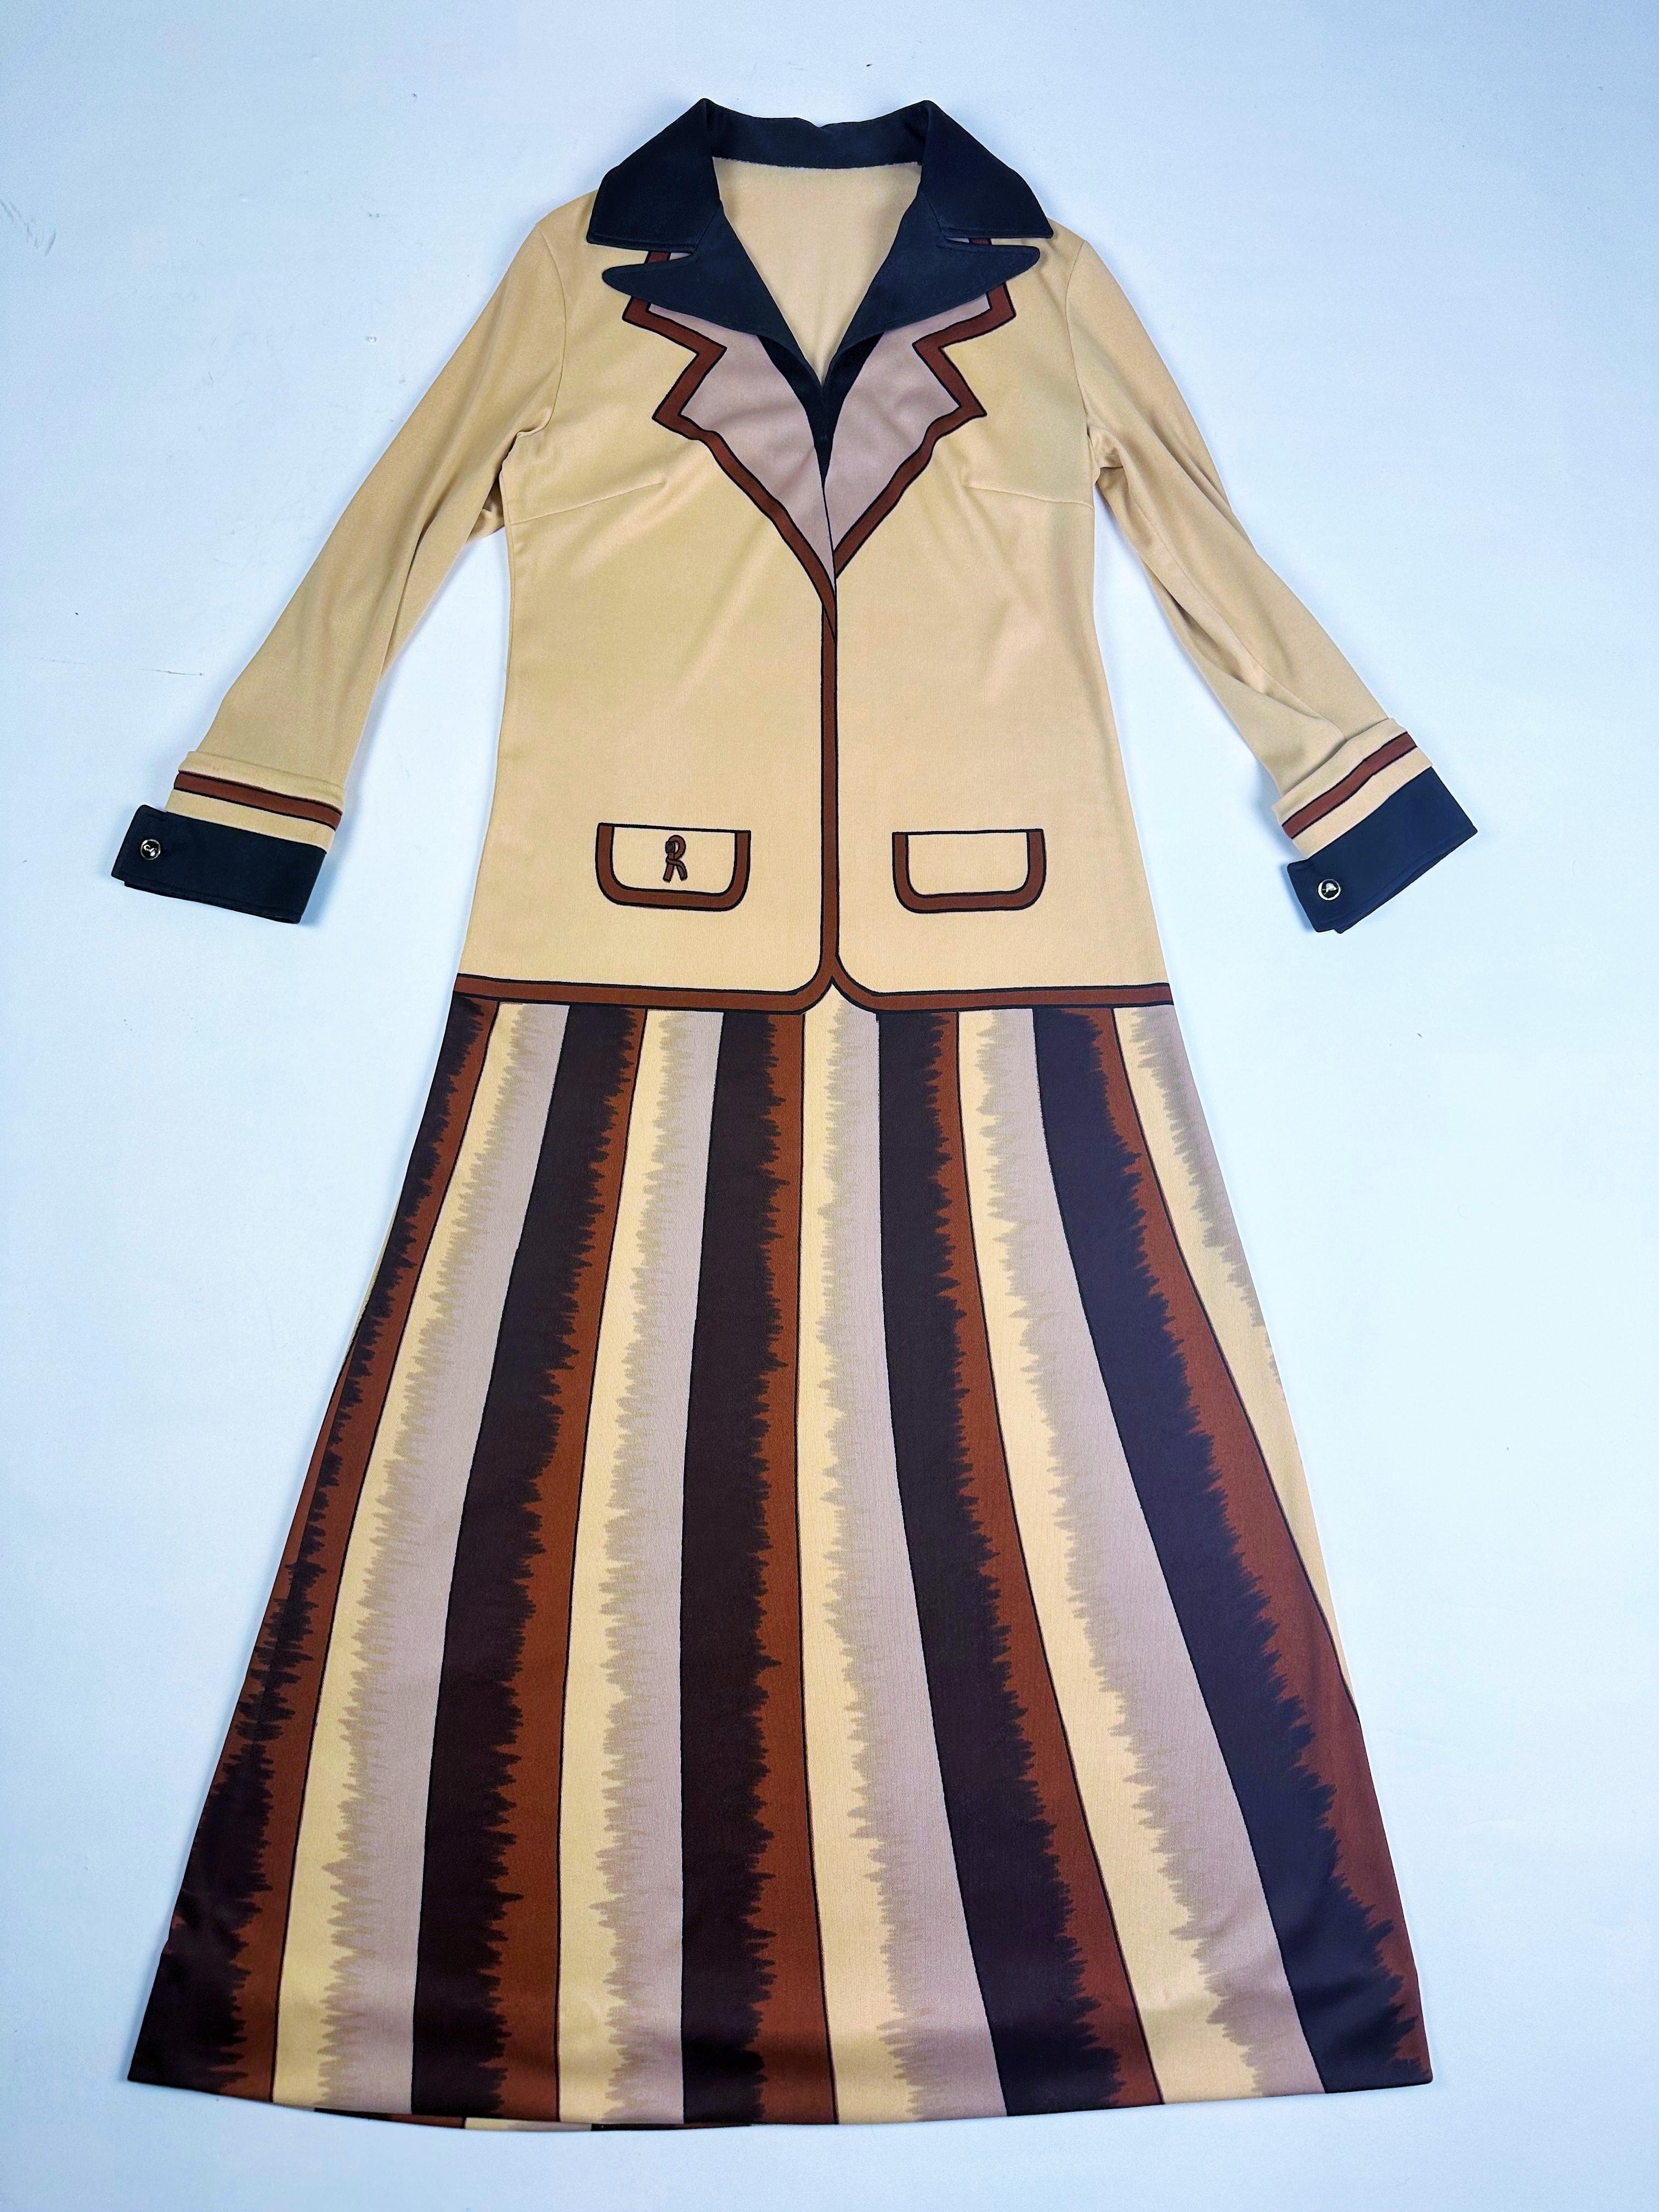 CIRCA 1975-1980

Italien

Wunderschönes Trompe L'Oeil-Kleid von der berühmten italienischen Designerin Roberta di Camérino. Gerades Kleid aus Stretch und fließendem Material, lange Ärmel mit V-Ausschnitt und gefalteten Spitzen. Sehr feiner